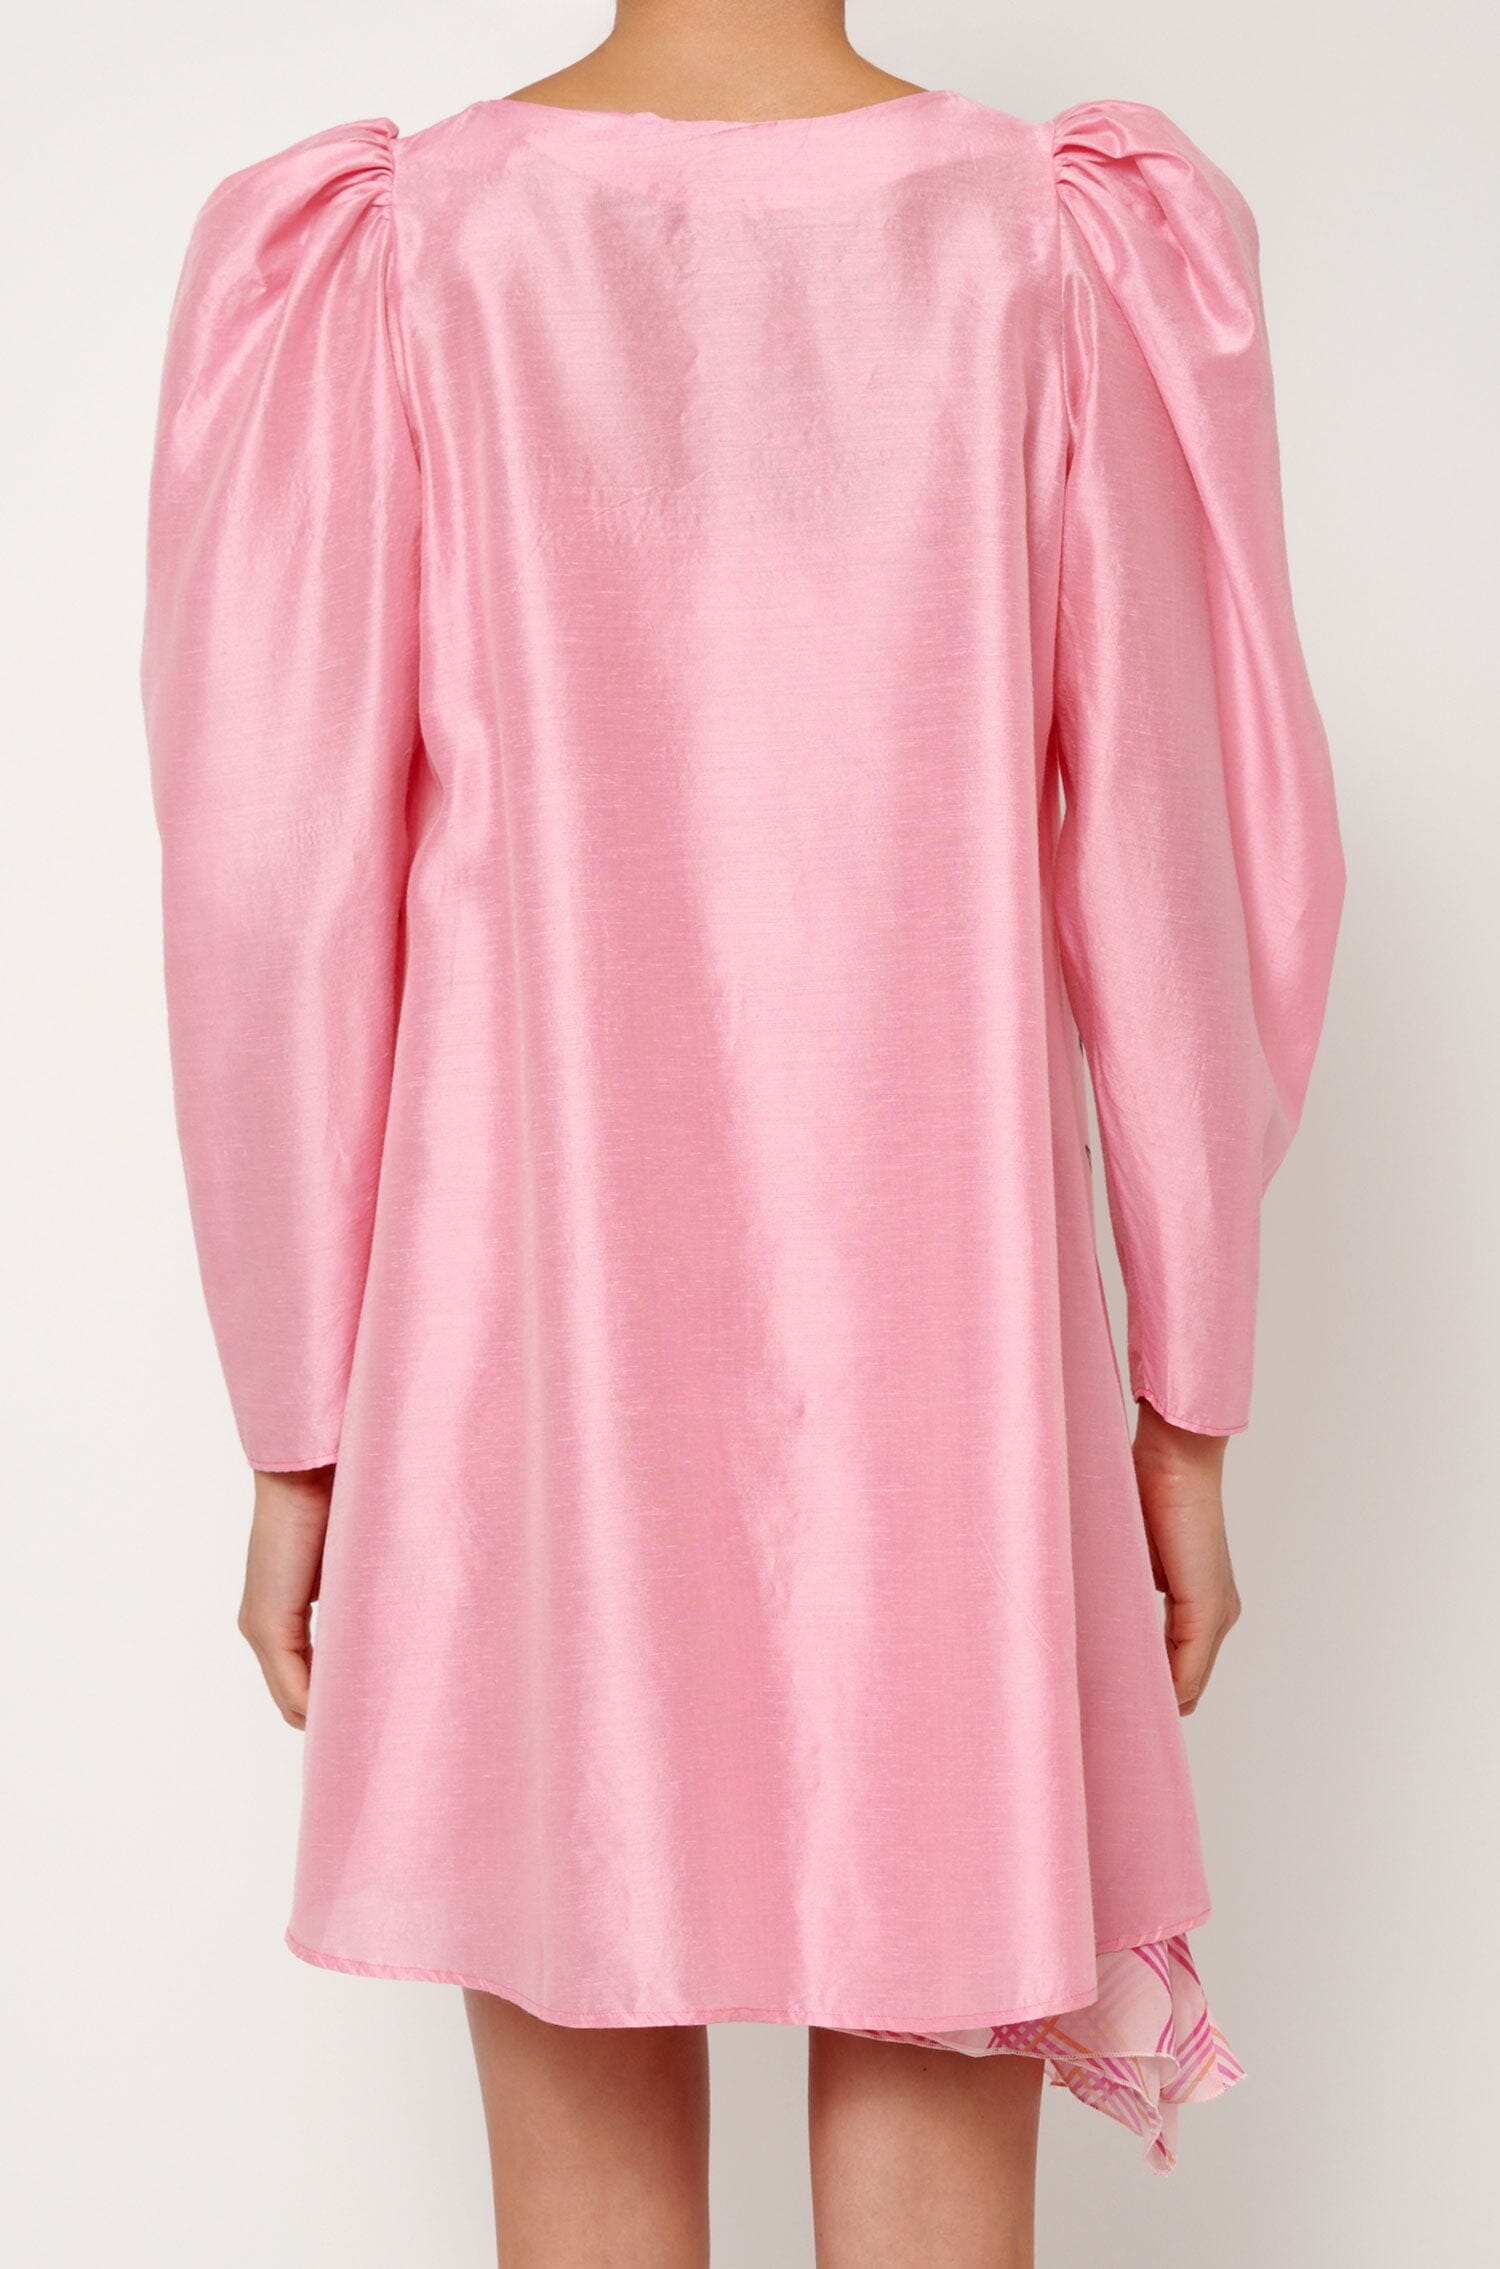 Blusón rosa pintado Shirts & blouses Luciana Estudio 